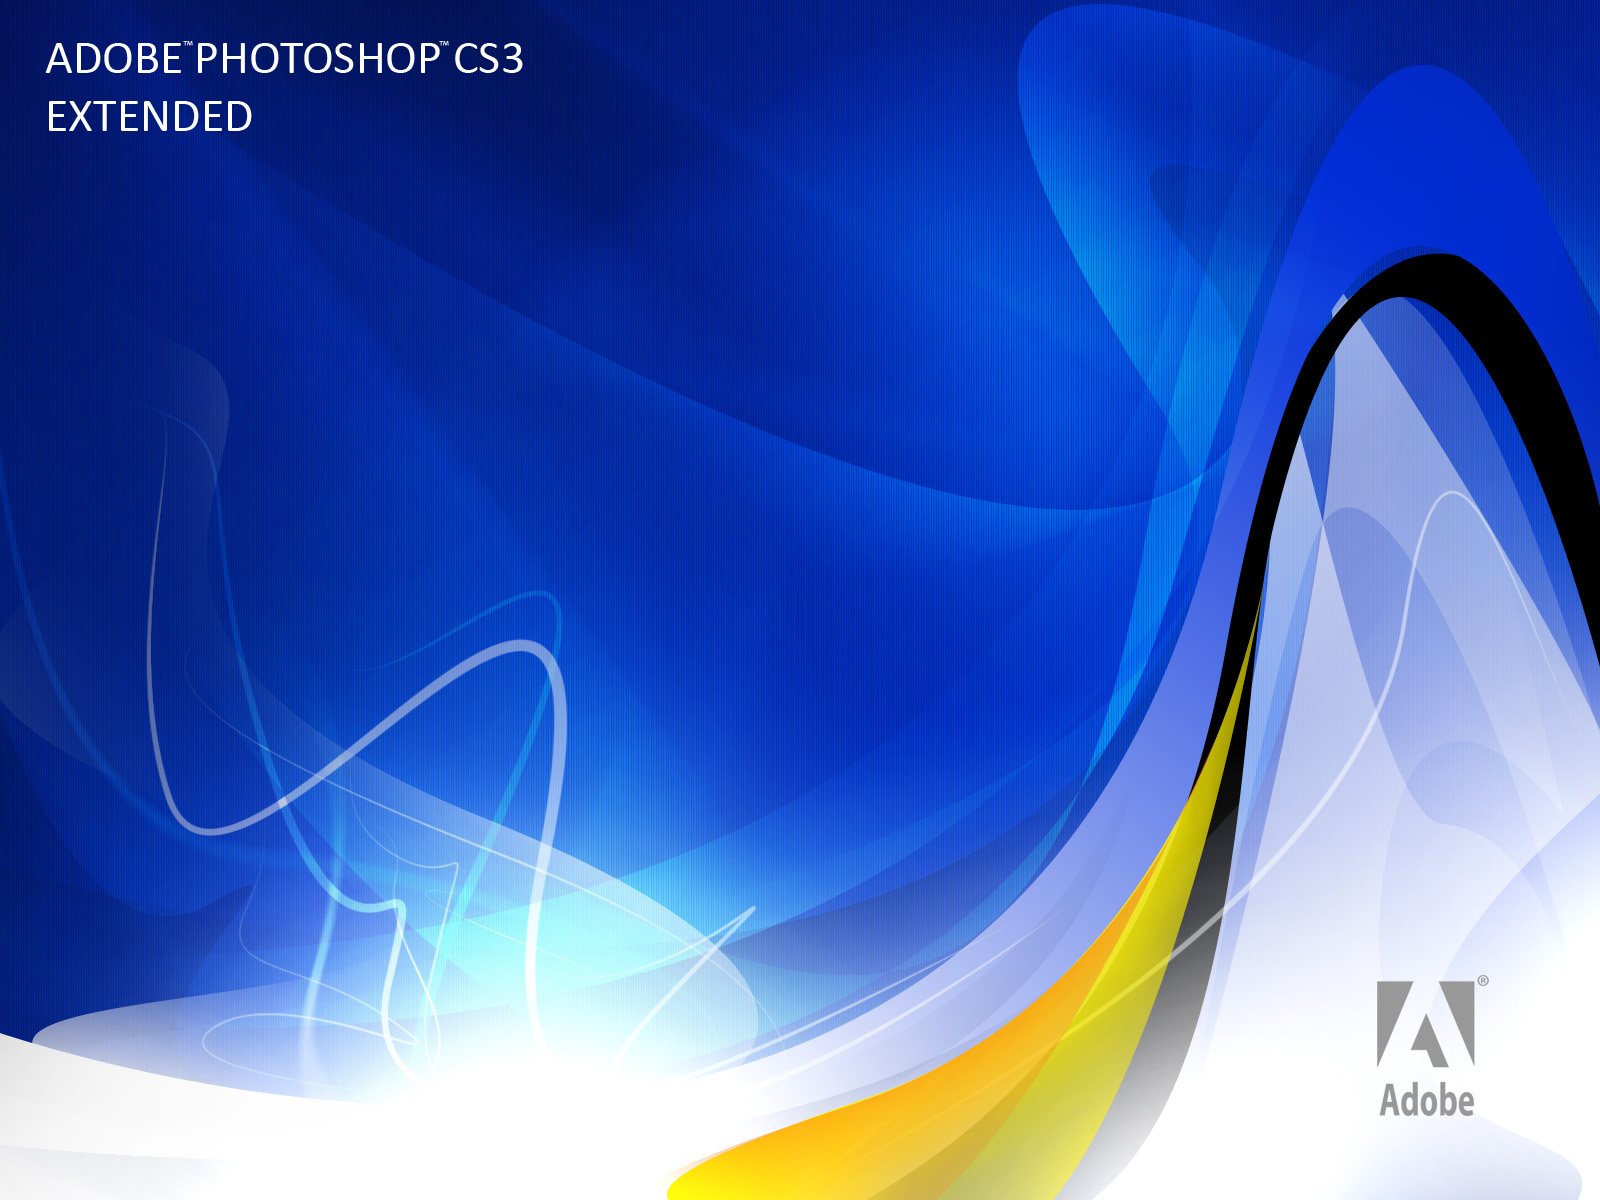 Adobe Photoshop Cs3 Extended - 1600x1200 Wallpaper 